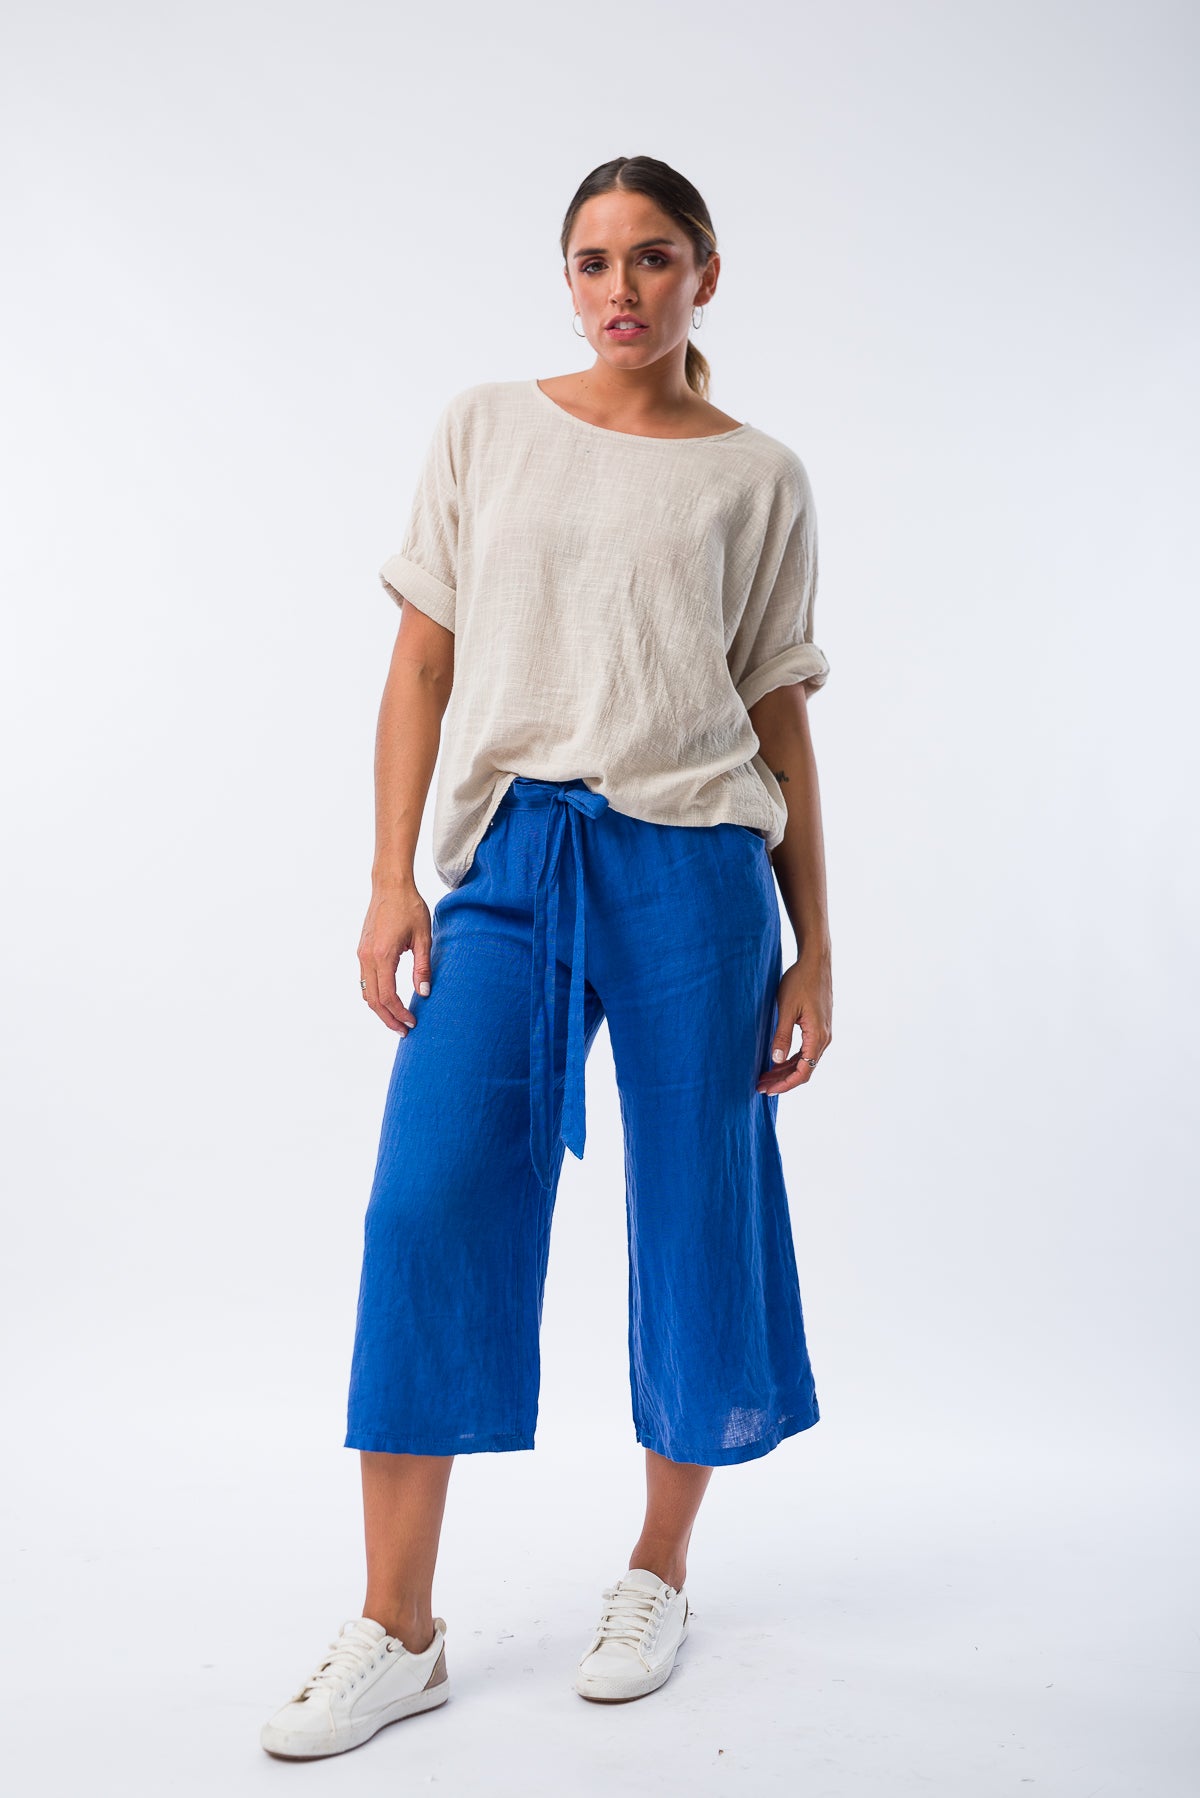 Pantalón Corto de Lino Azul